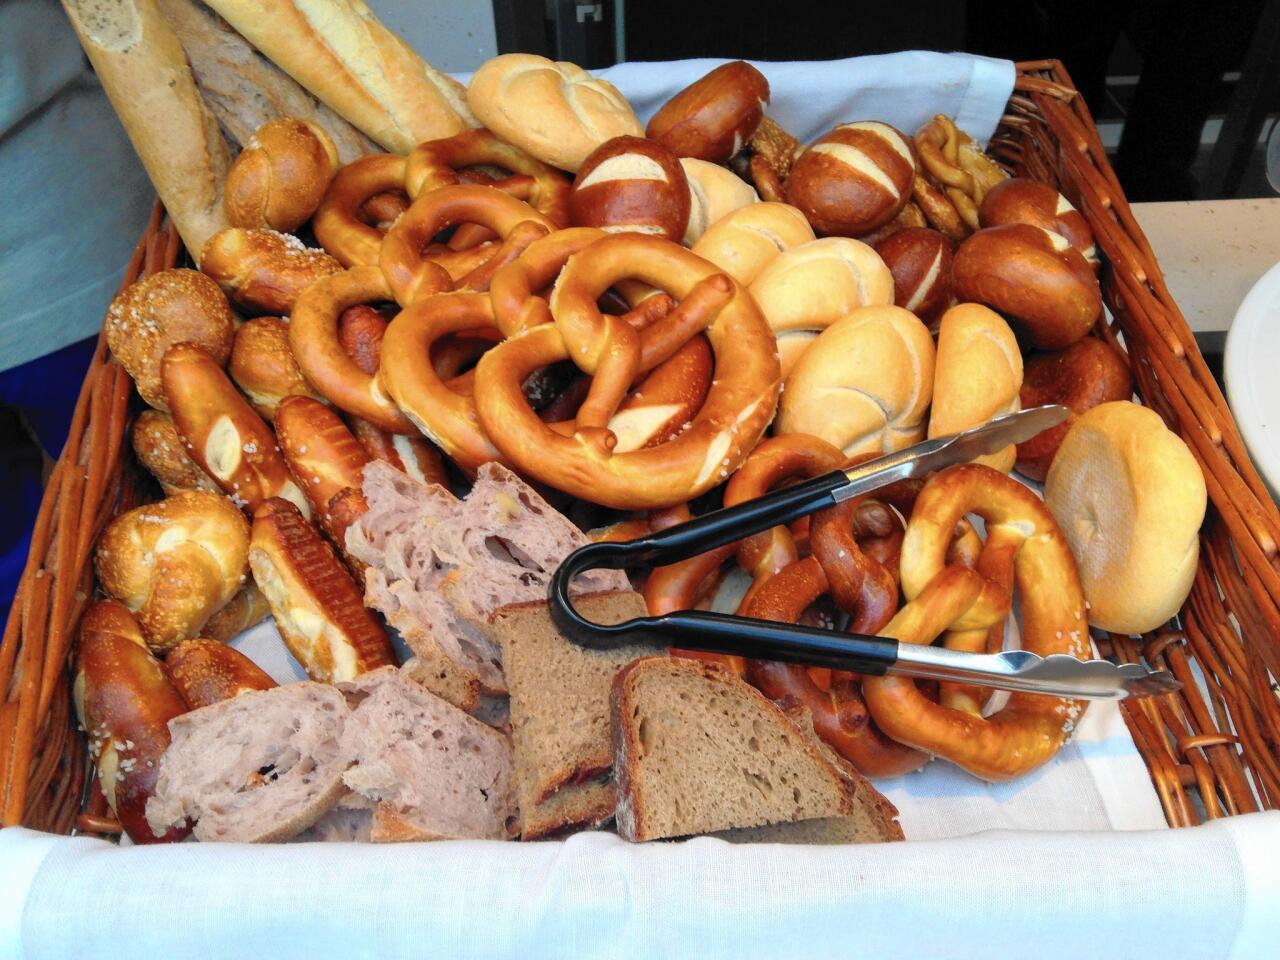 German pretzels